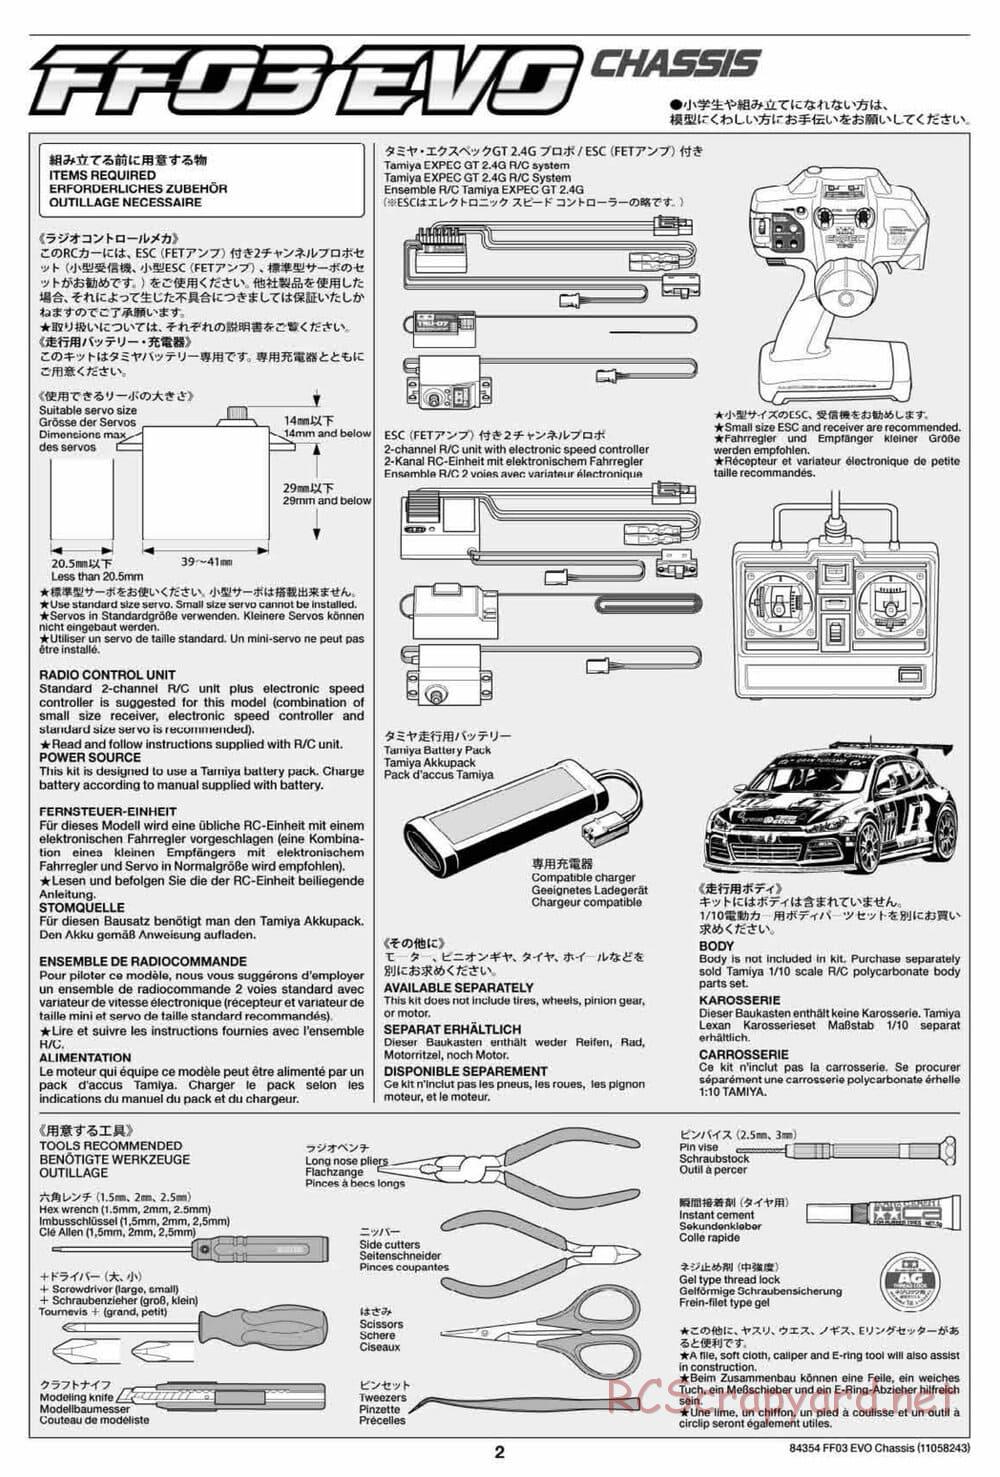 Tamiya - FF-03 Evo Chassis - Manual - Page 2